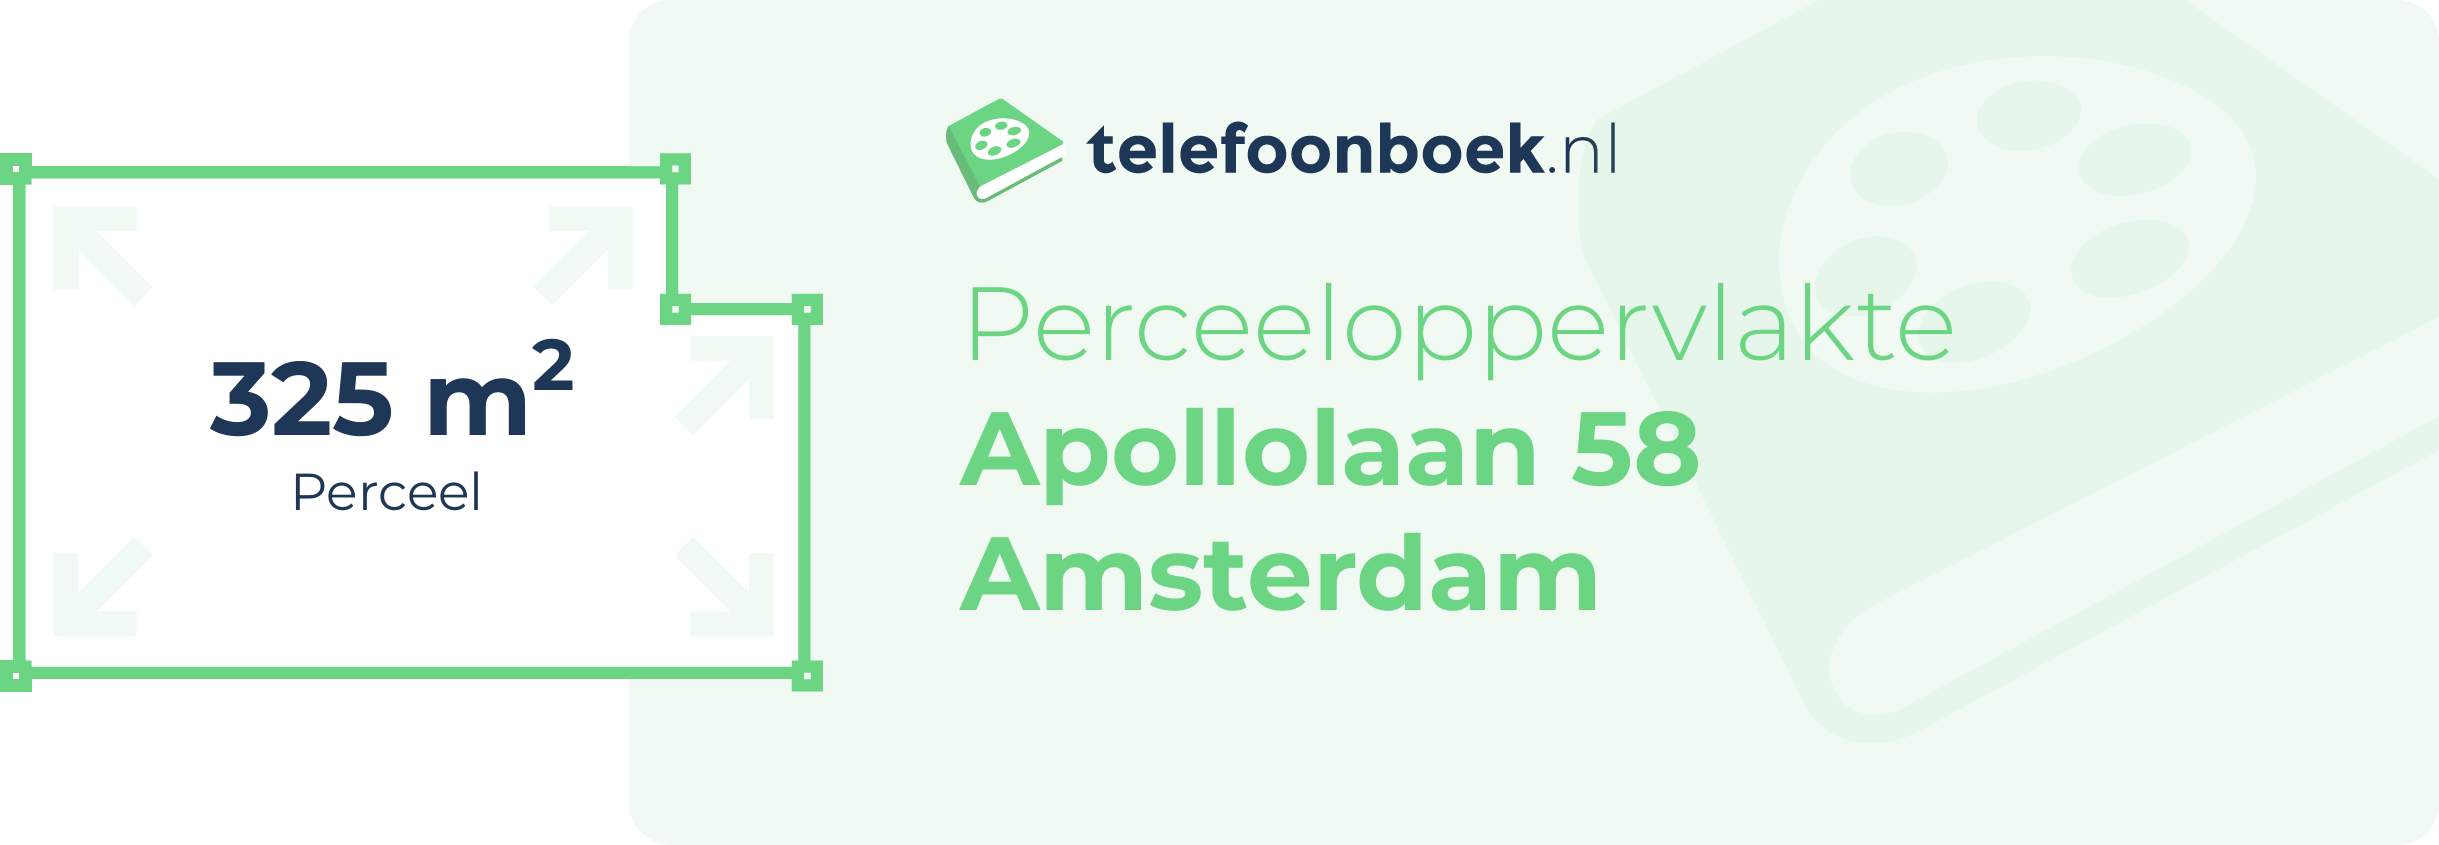 Perceeloppervlakte Apollolaan 58 Amsterdam